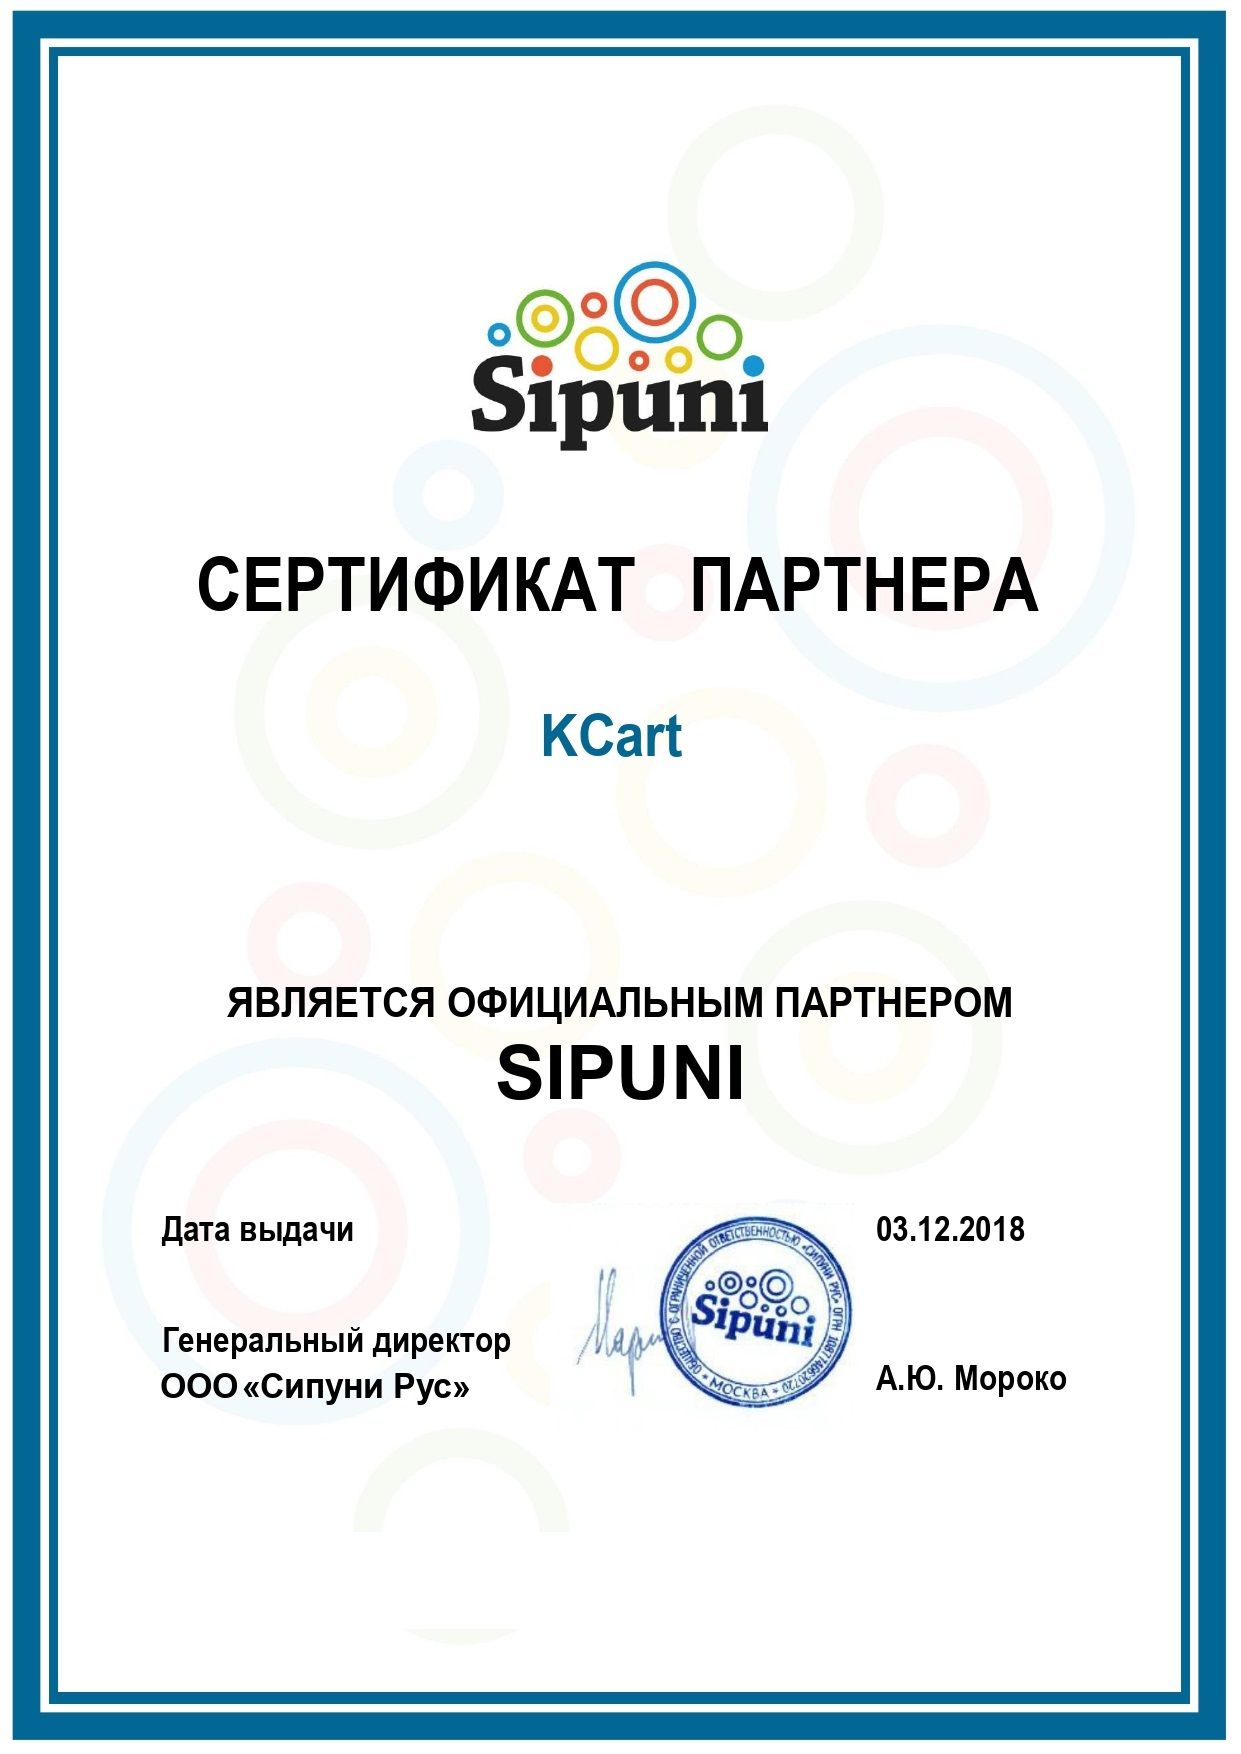 Сертификат партнерства IP телефония